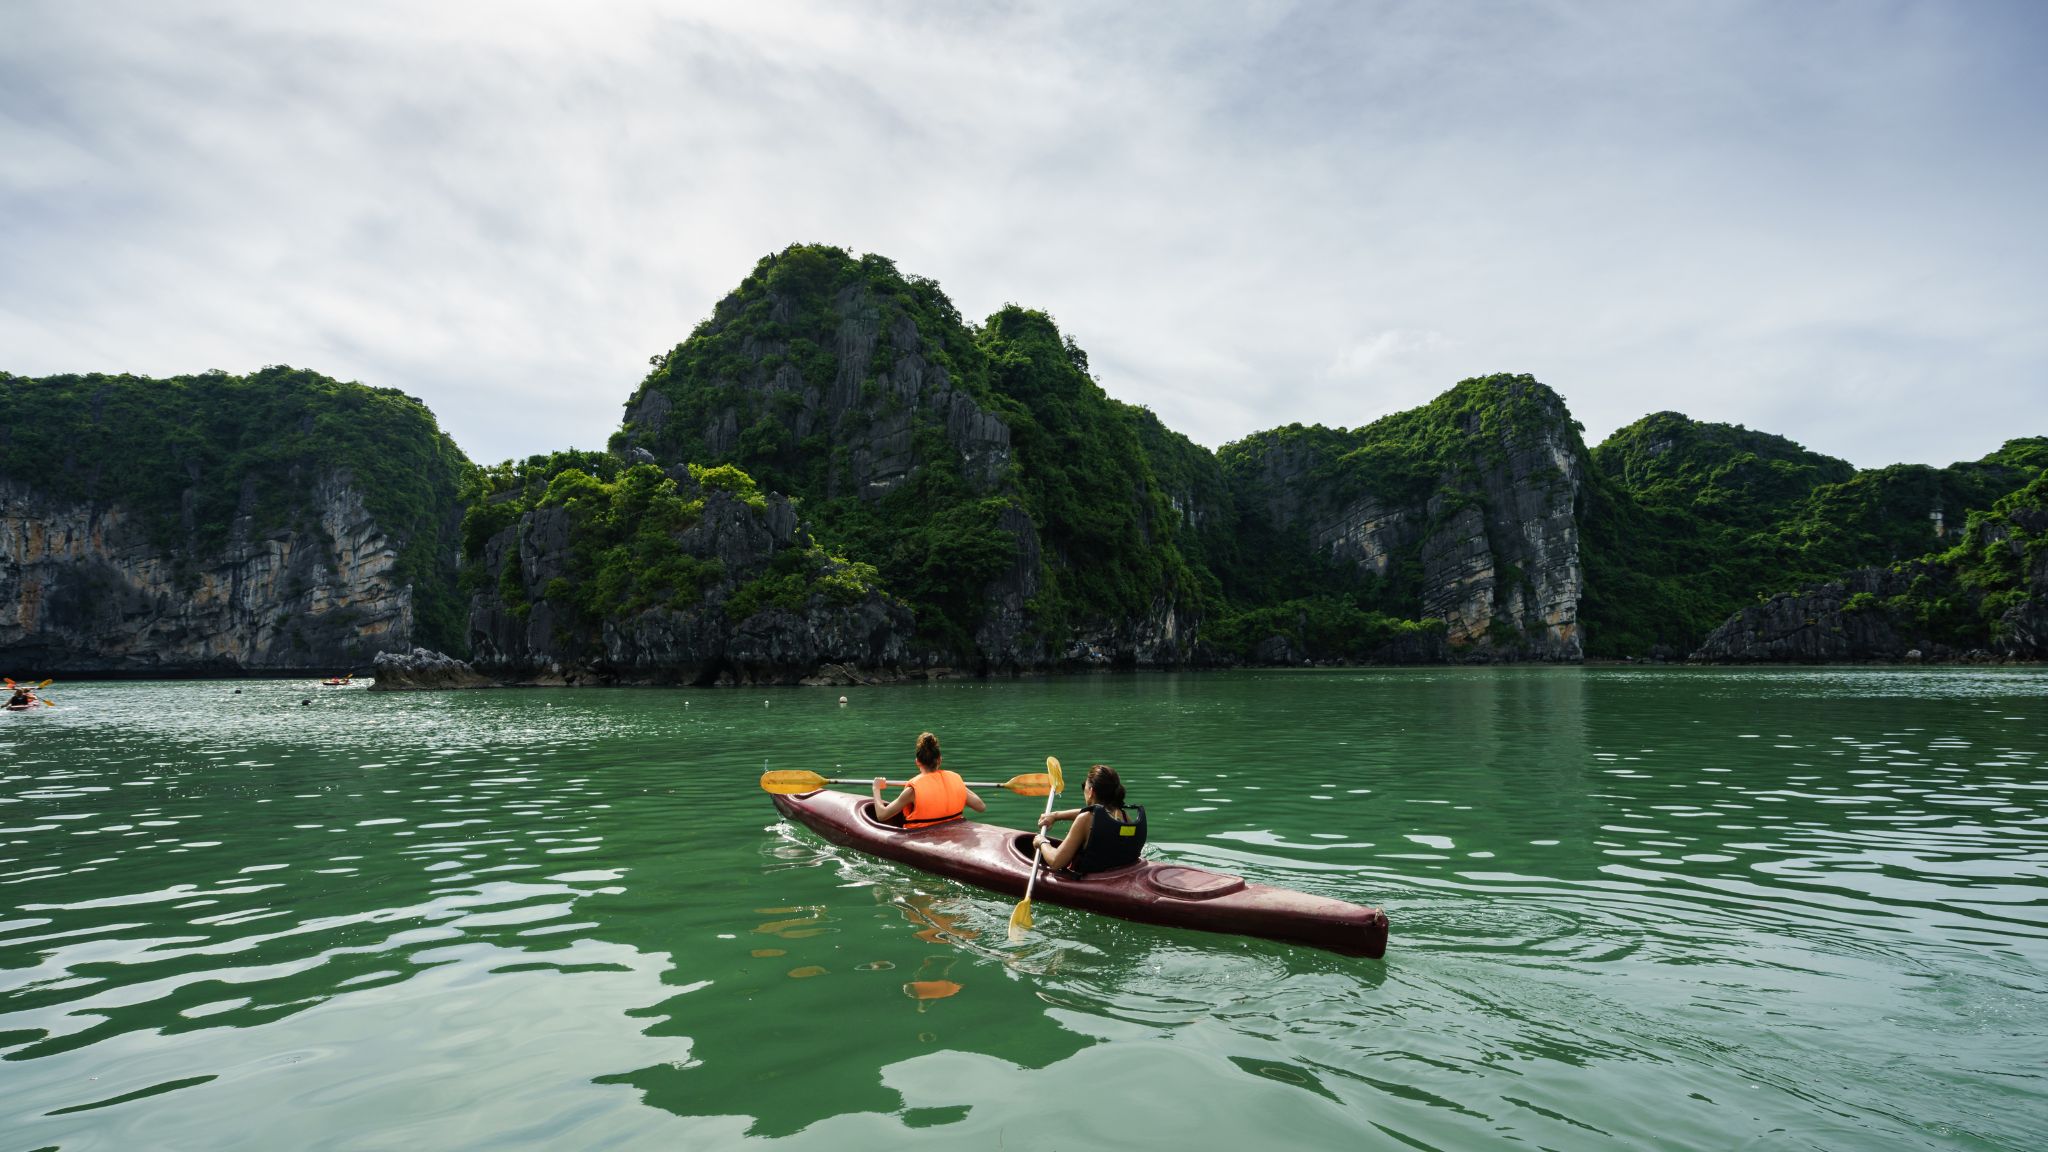 Take An Exciting Kayaking Trip To Climbing Spot